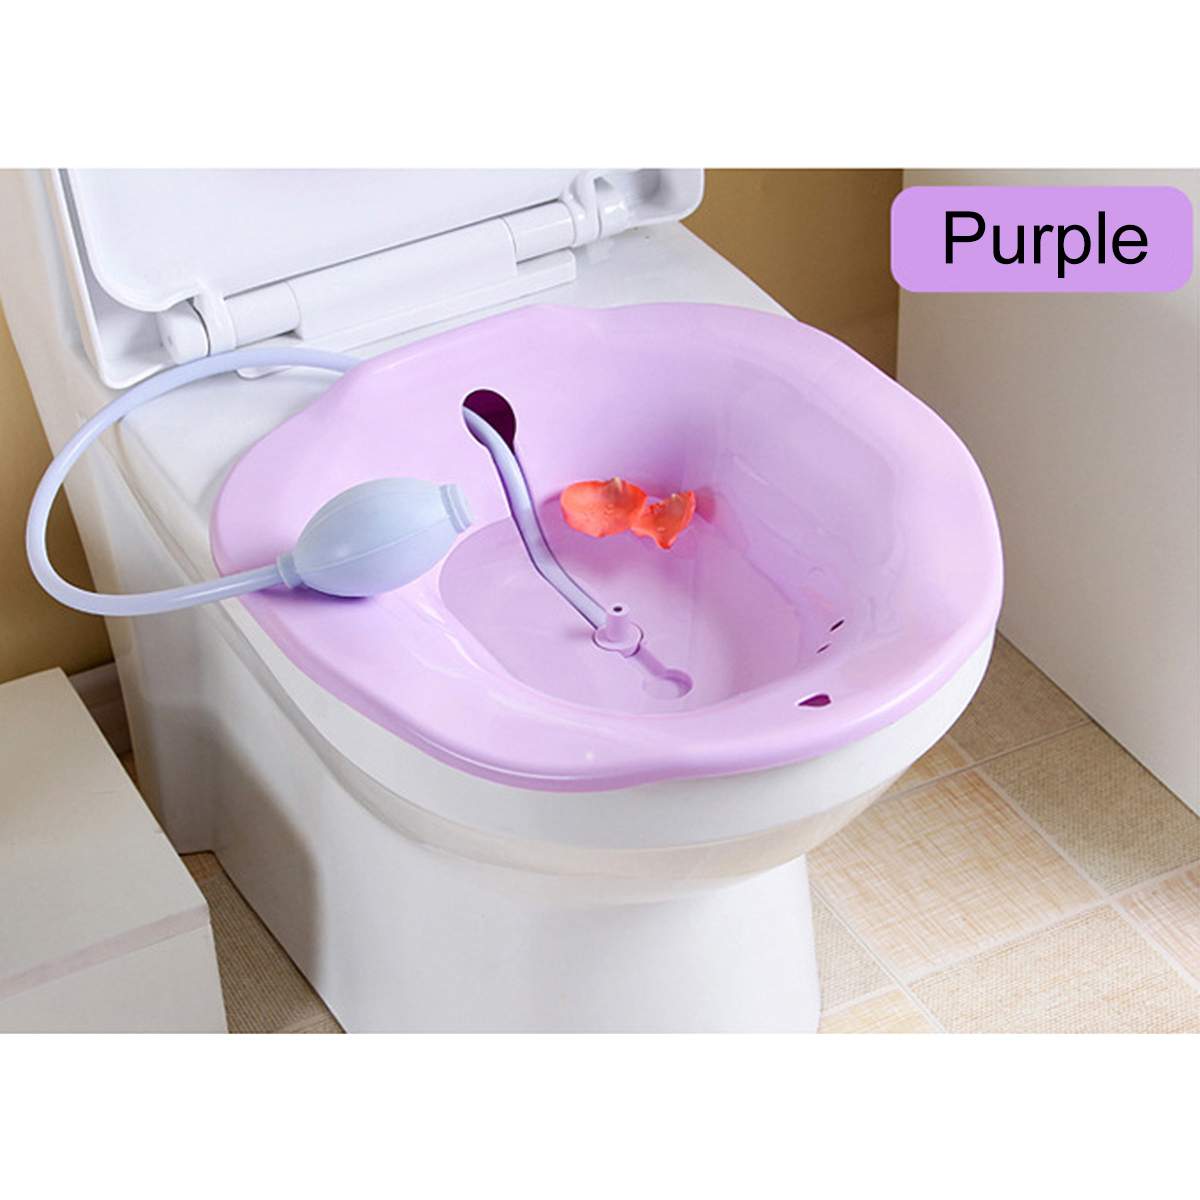 Bærbar 2.5l bidet sitz badekar babysygeplejeboks kit postpartum hæmorroide vaskesprøjte på toilet: Lilla